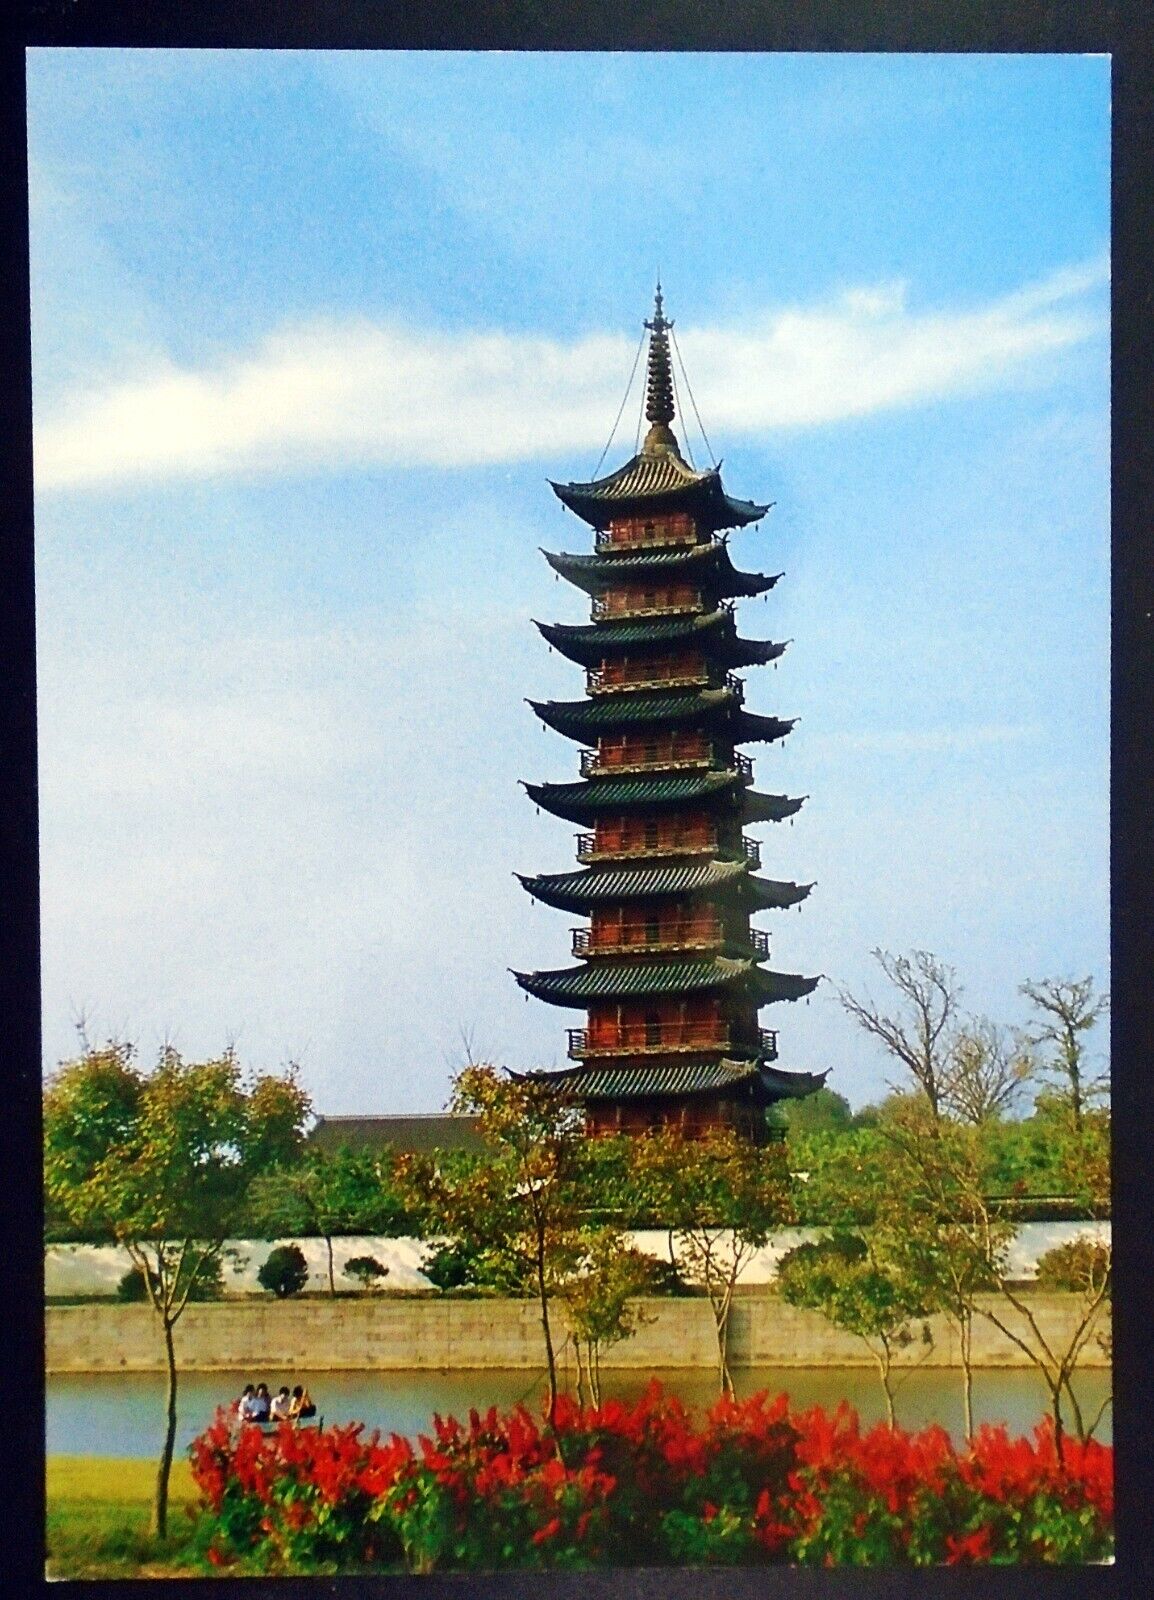 The Songjiang Square Pagoda (Xingshengjiao), Buddhism, Shanghai, China